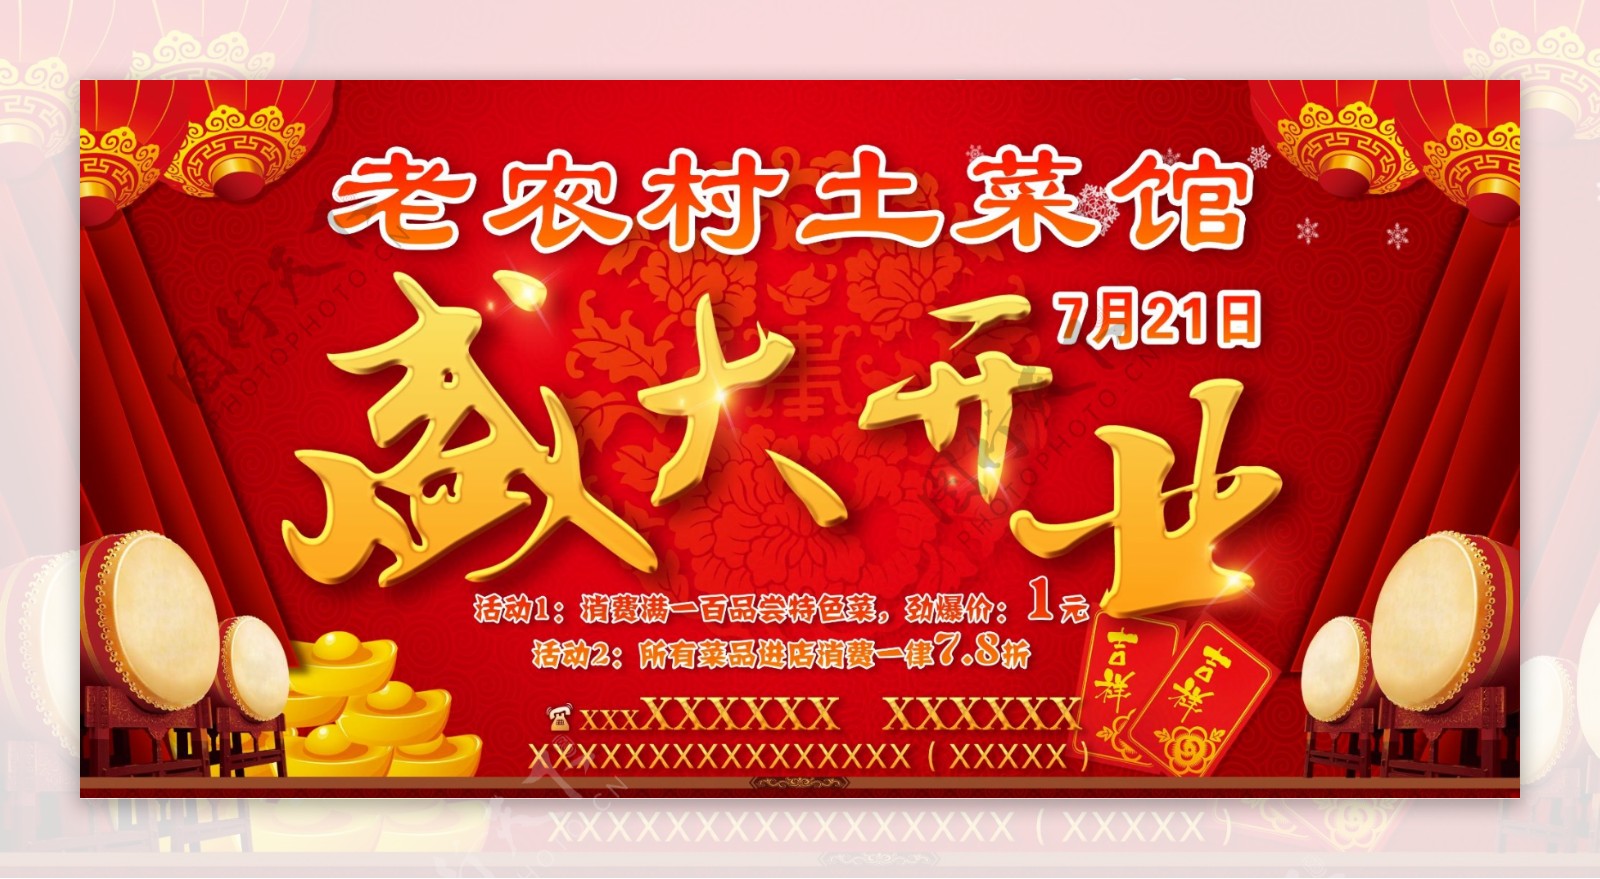 中国红喜庆餐馆盛大开业